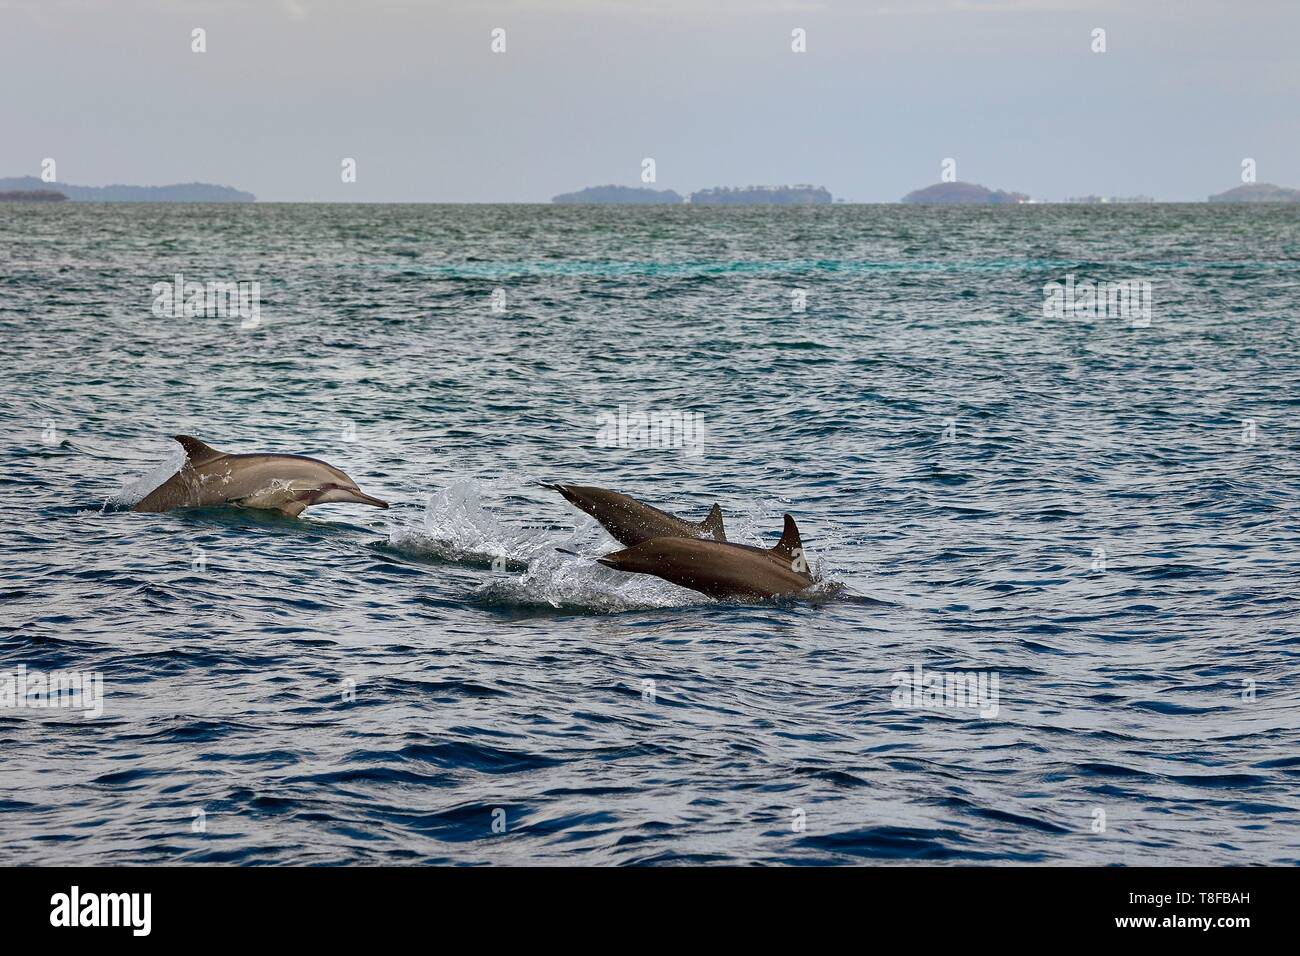 Francia, la isla de Mayotte (departamento francés de ultramar), Grande Terre, delfines (Stenella longirostris) en el borde de la laguna, en la costa oriental Foto de stock